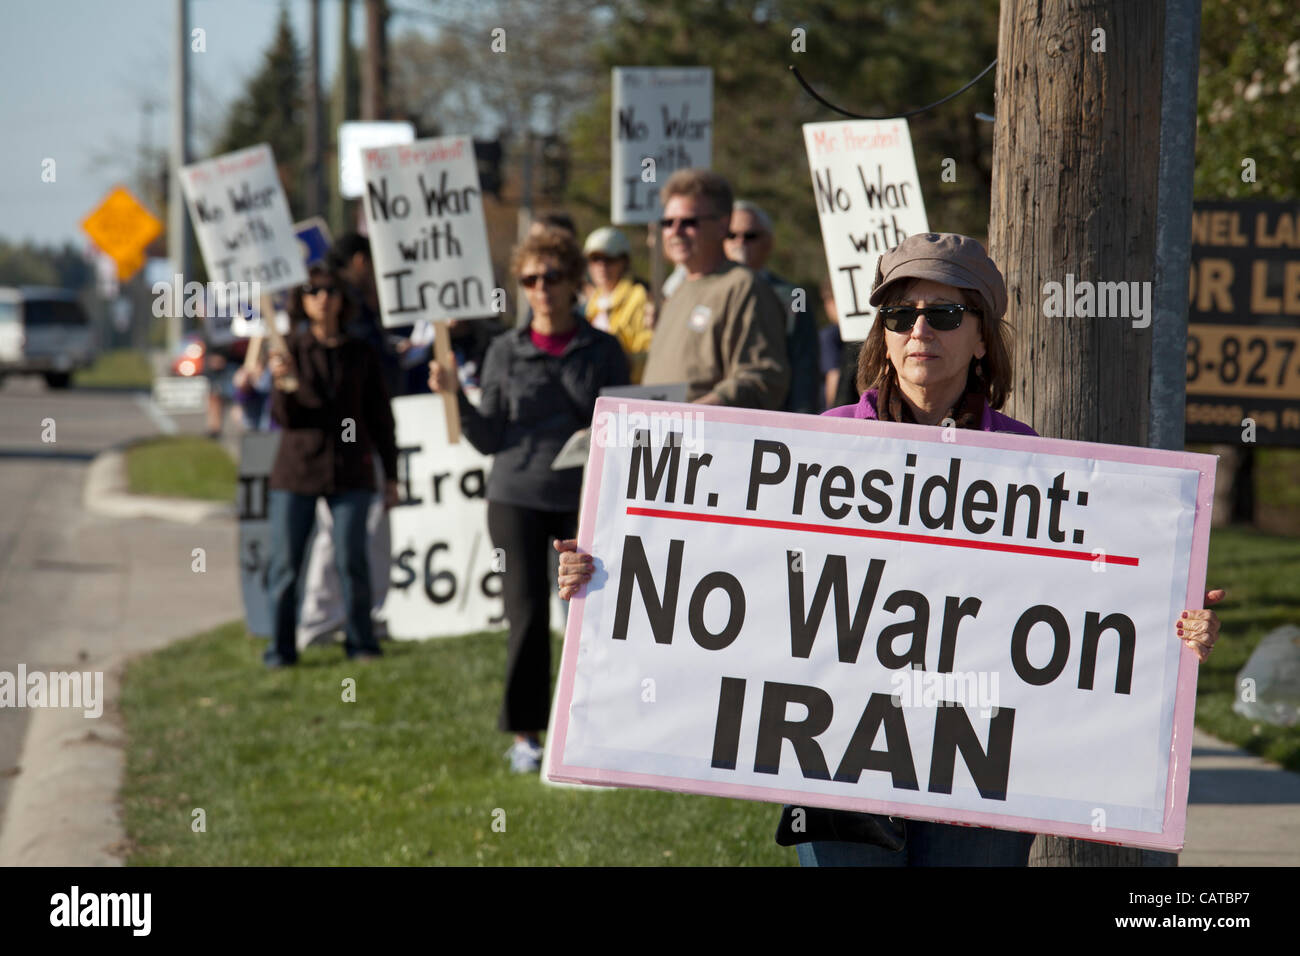 Bingham Farms, Michigan - los activistas de la paz mantenga signos opuestos a la guerra con Irán mientras espera para vehículos de escolta del Presidente Obama para pasar. El presidente estaba asistiendo a una campaña de recaudación de fondos en las cercanías. Foto de stock